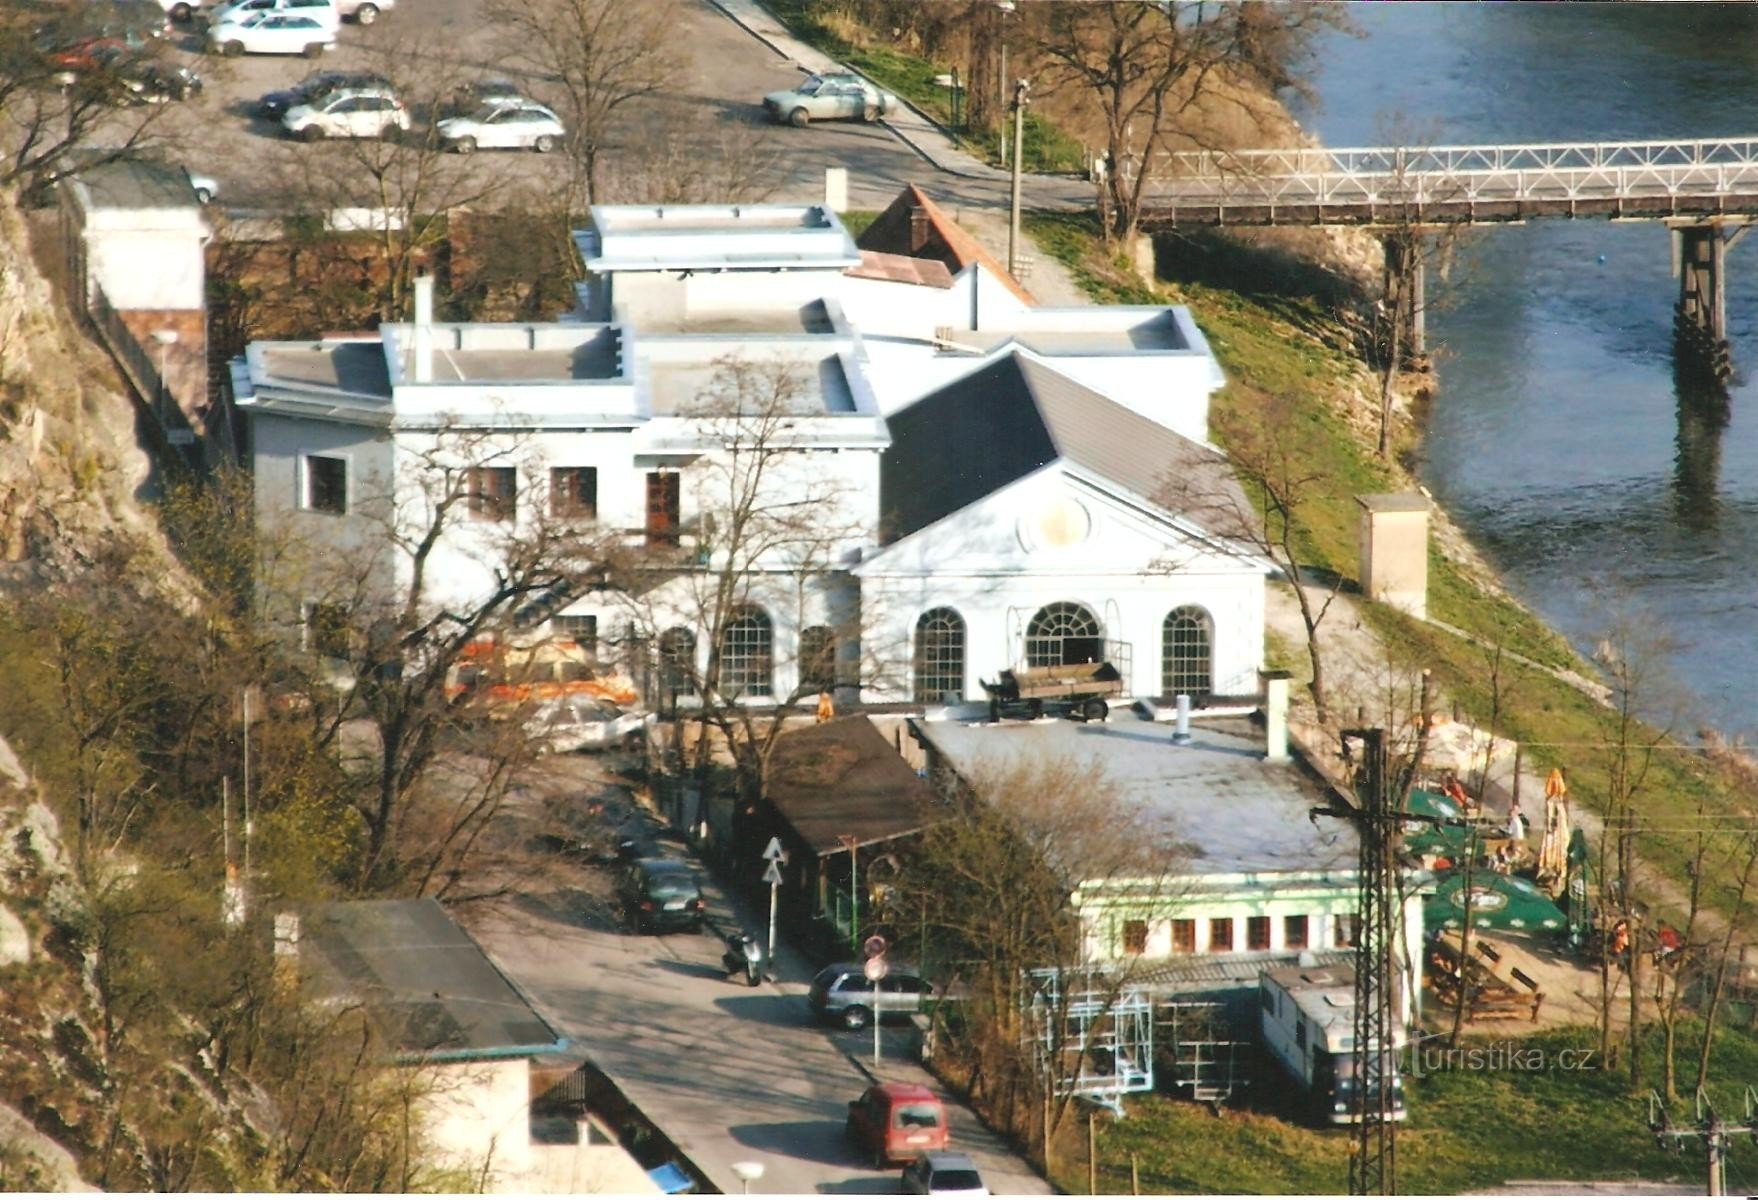 Znojmo - egykori városi erőmű